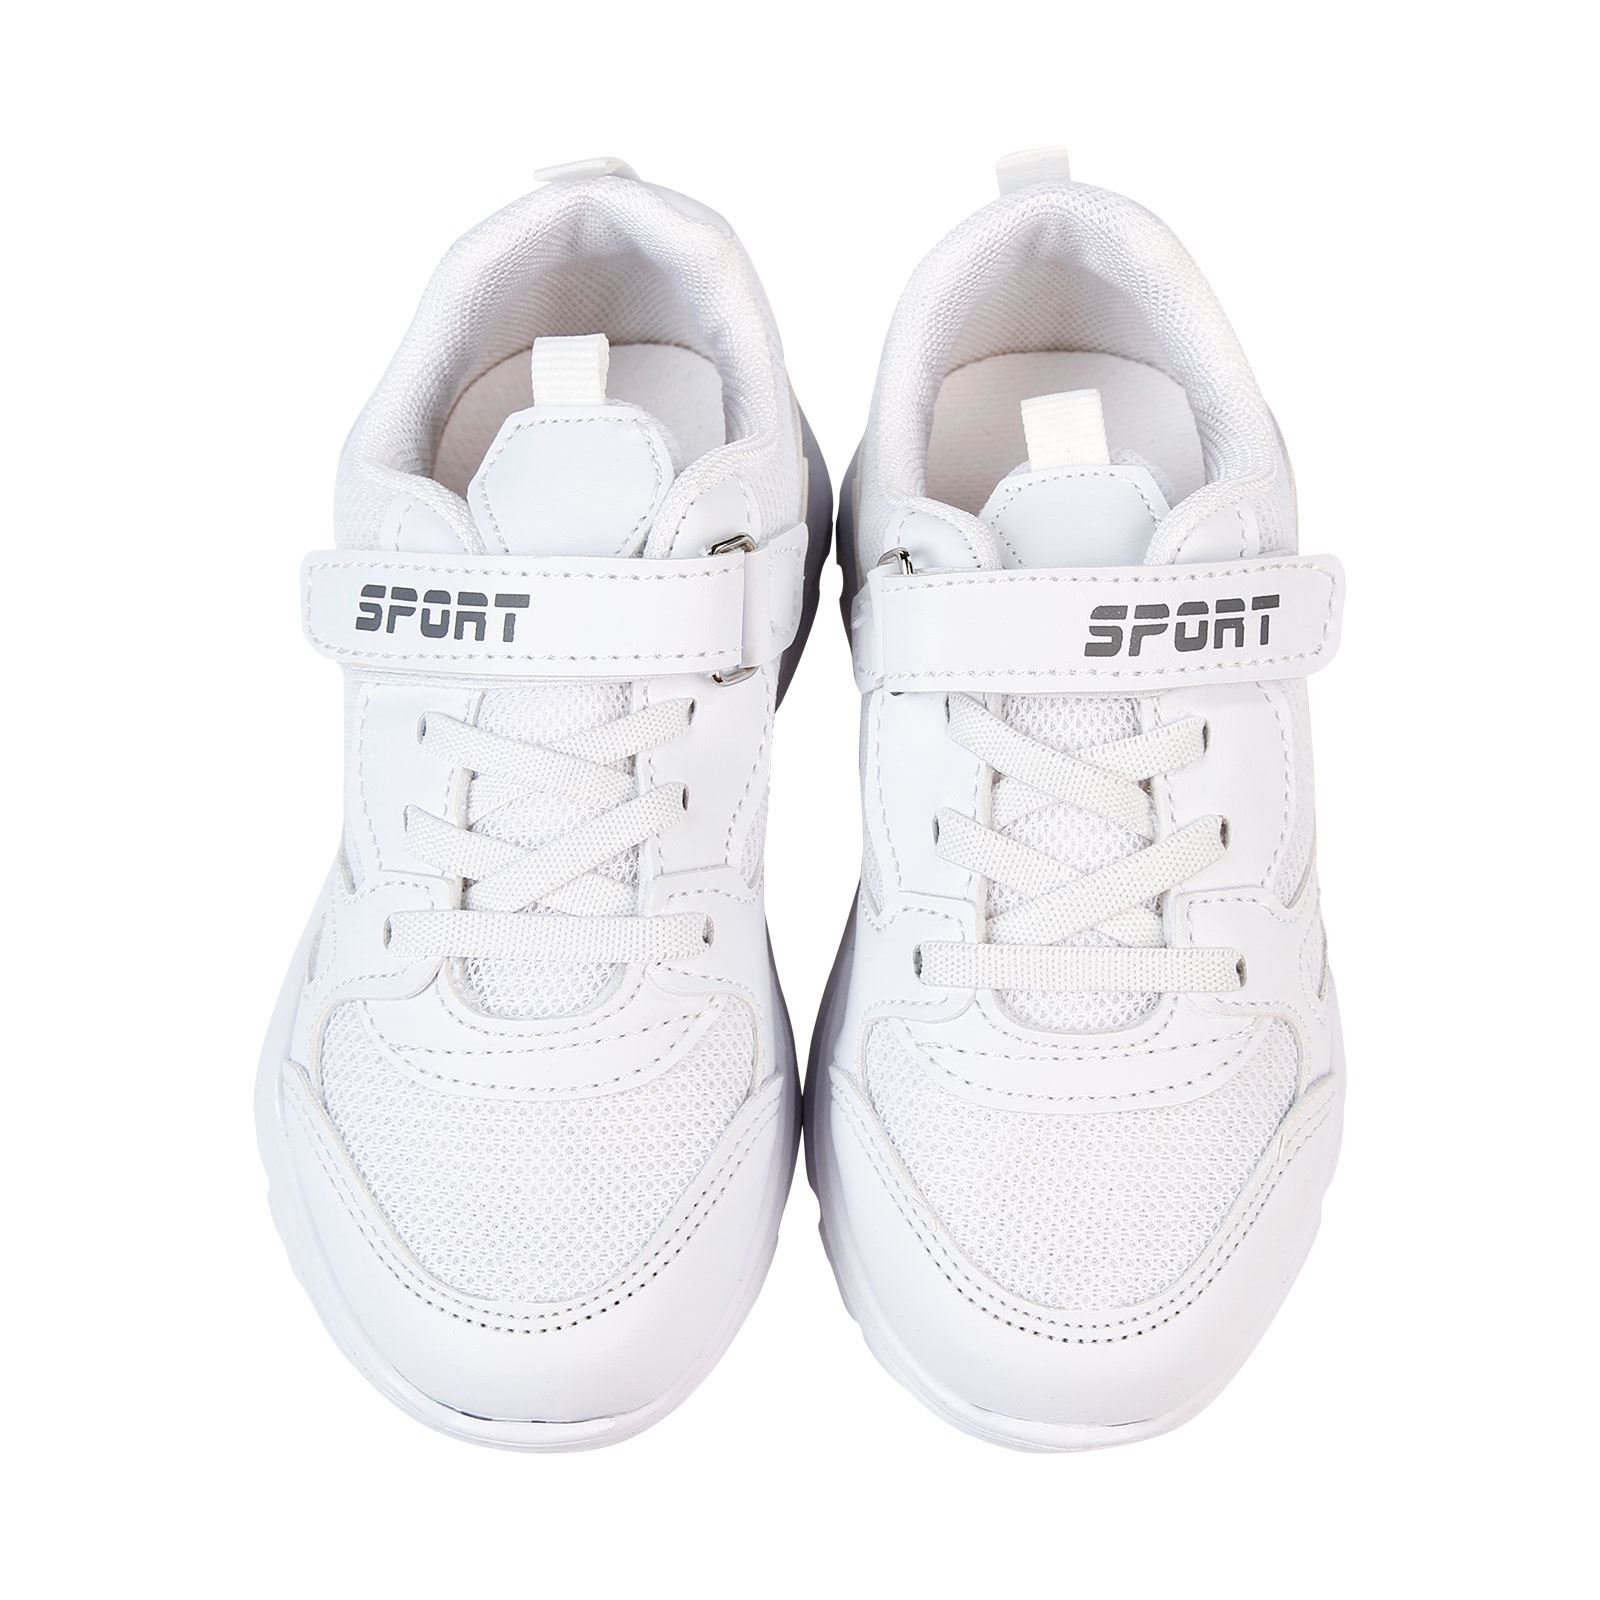 Sport Erkek Çocuk Spor Ayakkabı 26-30 Numara Beyaz